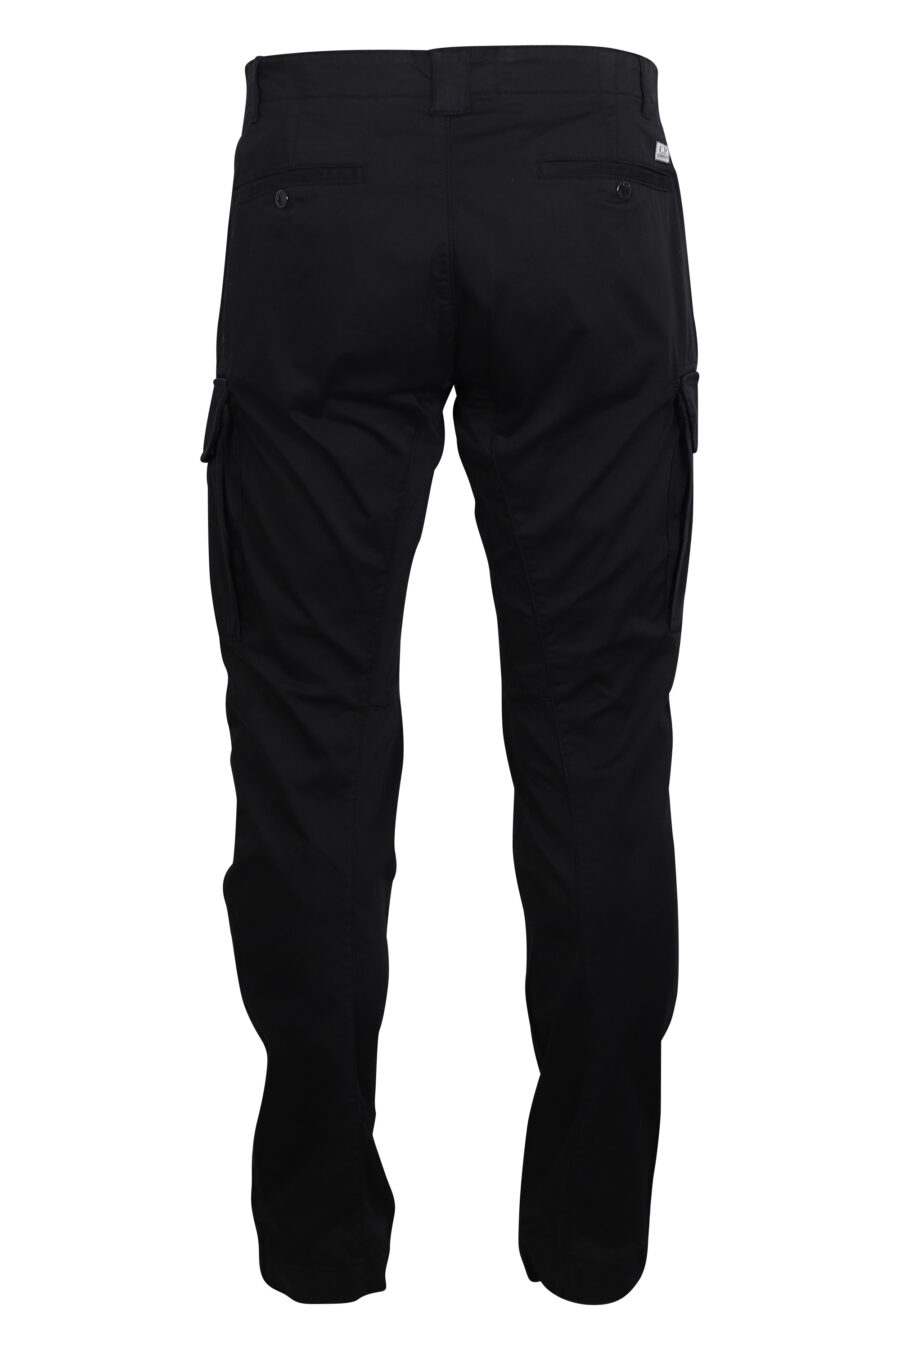 Black cargo trousers with circular mini-logo - IMG 2470 1